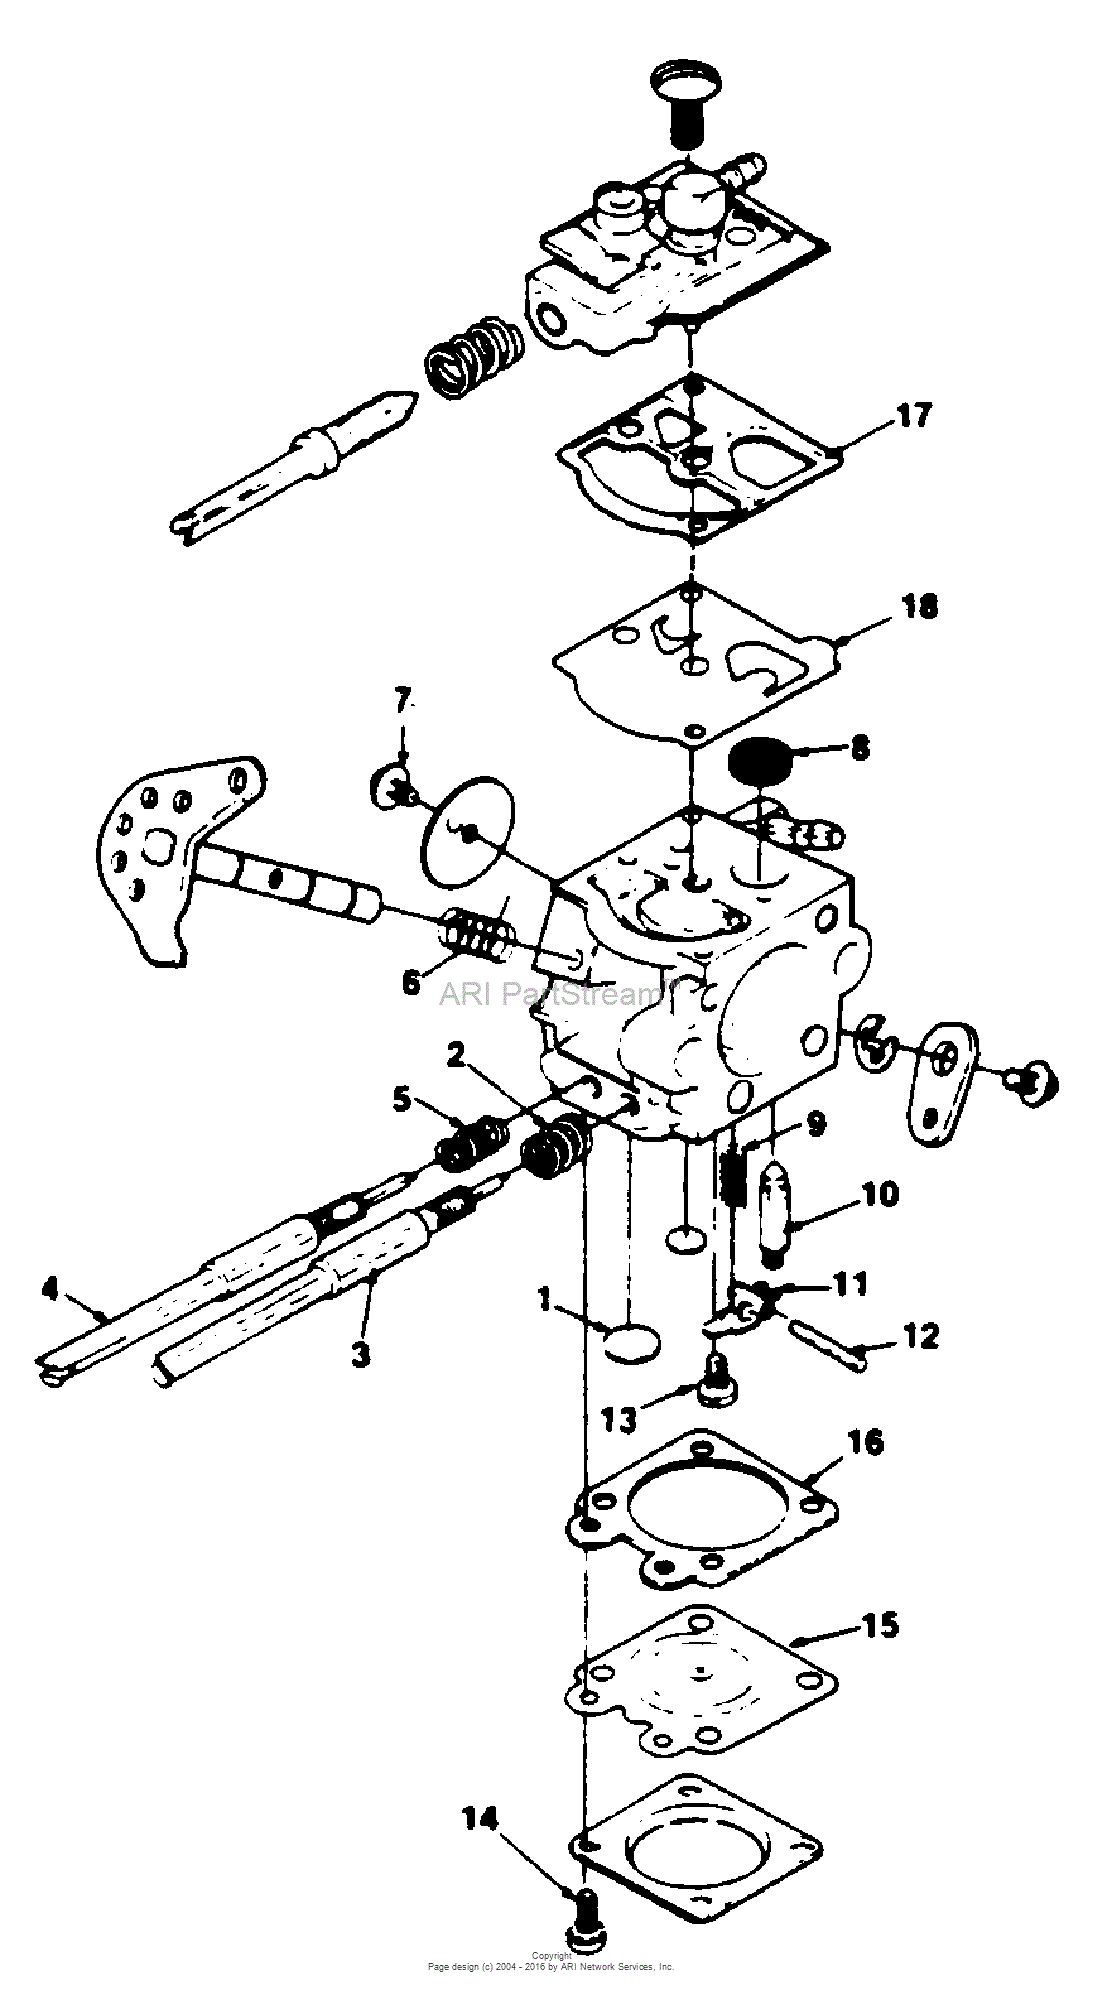 Homelite 330 Chain Saw UT-10575 Parts Diagram for Walbro Carburetor